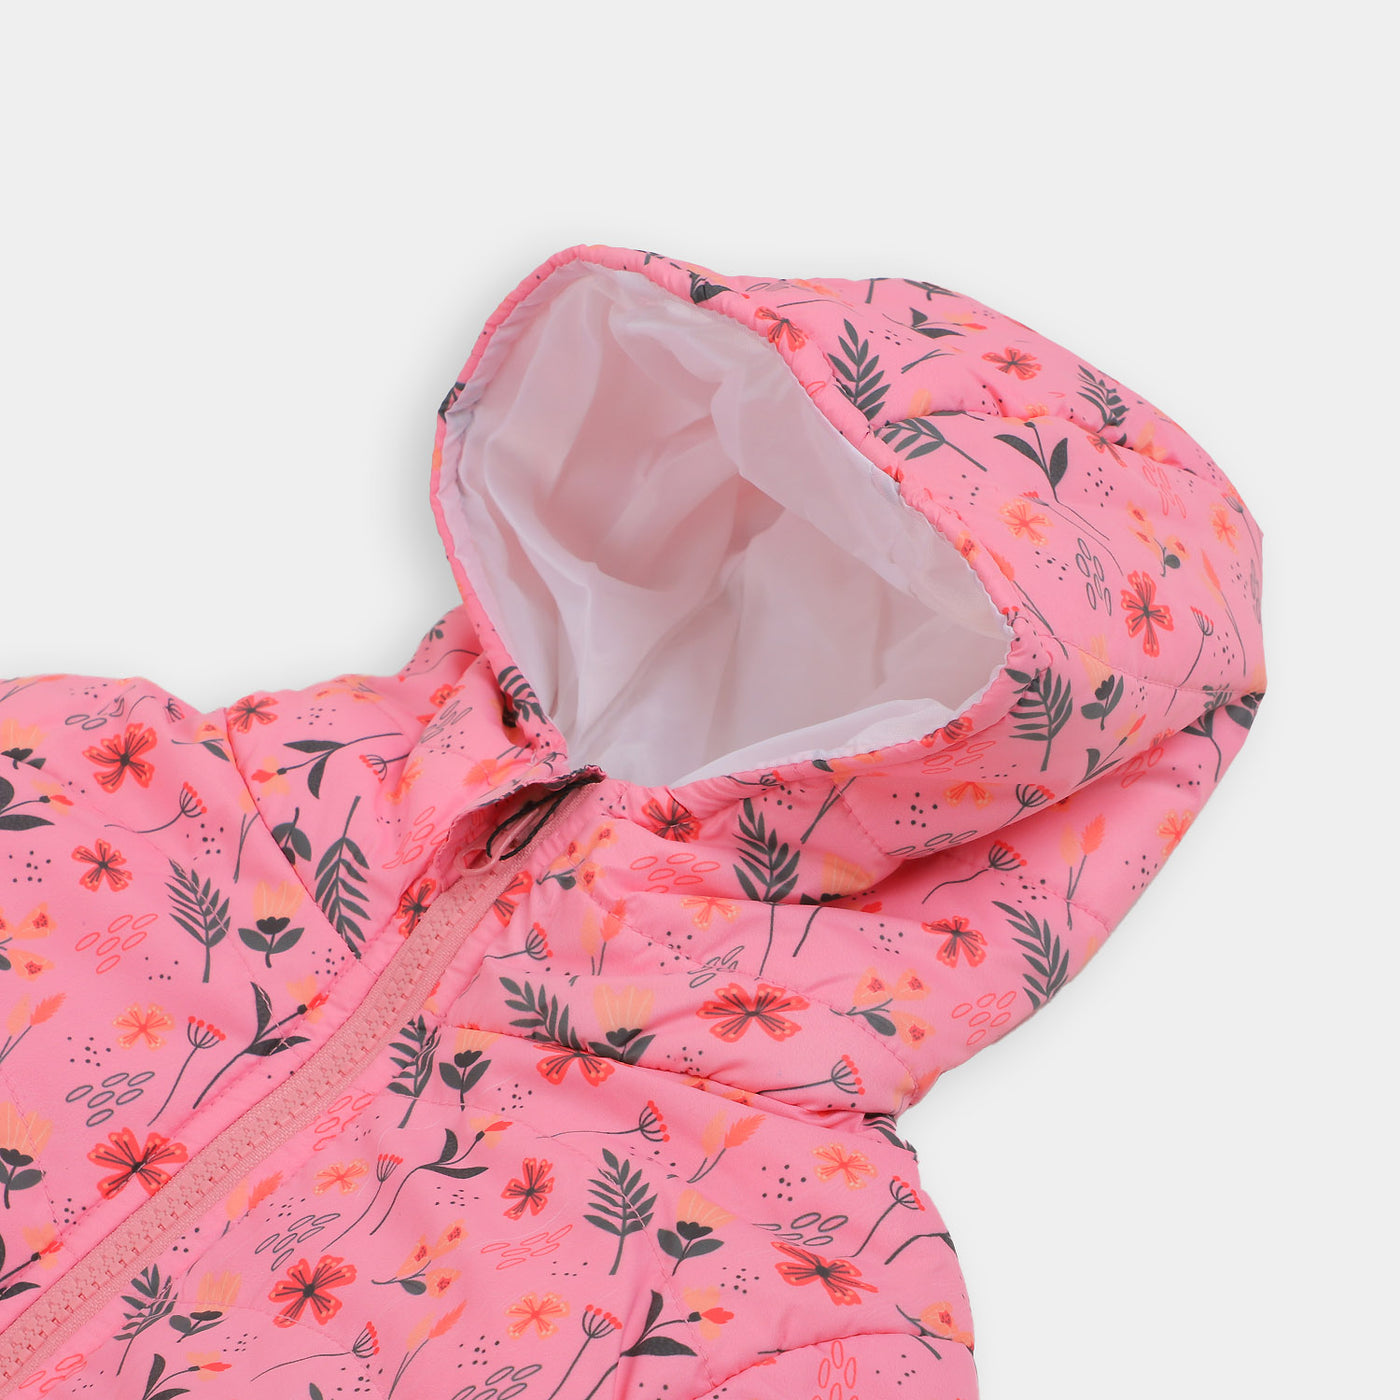 Girls Hooded & Zipper Jacket - Hot Pink